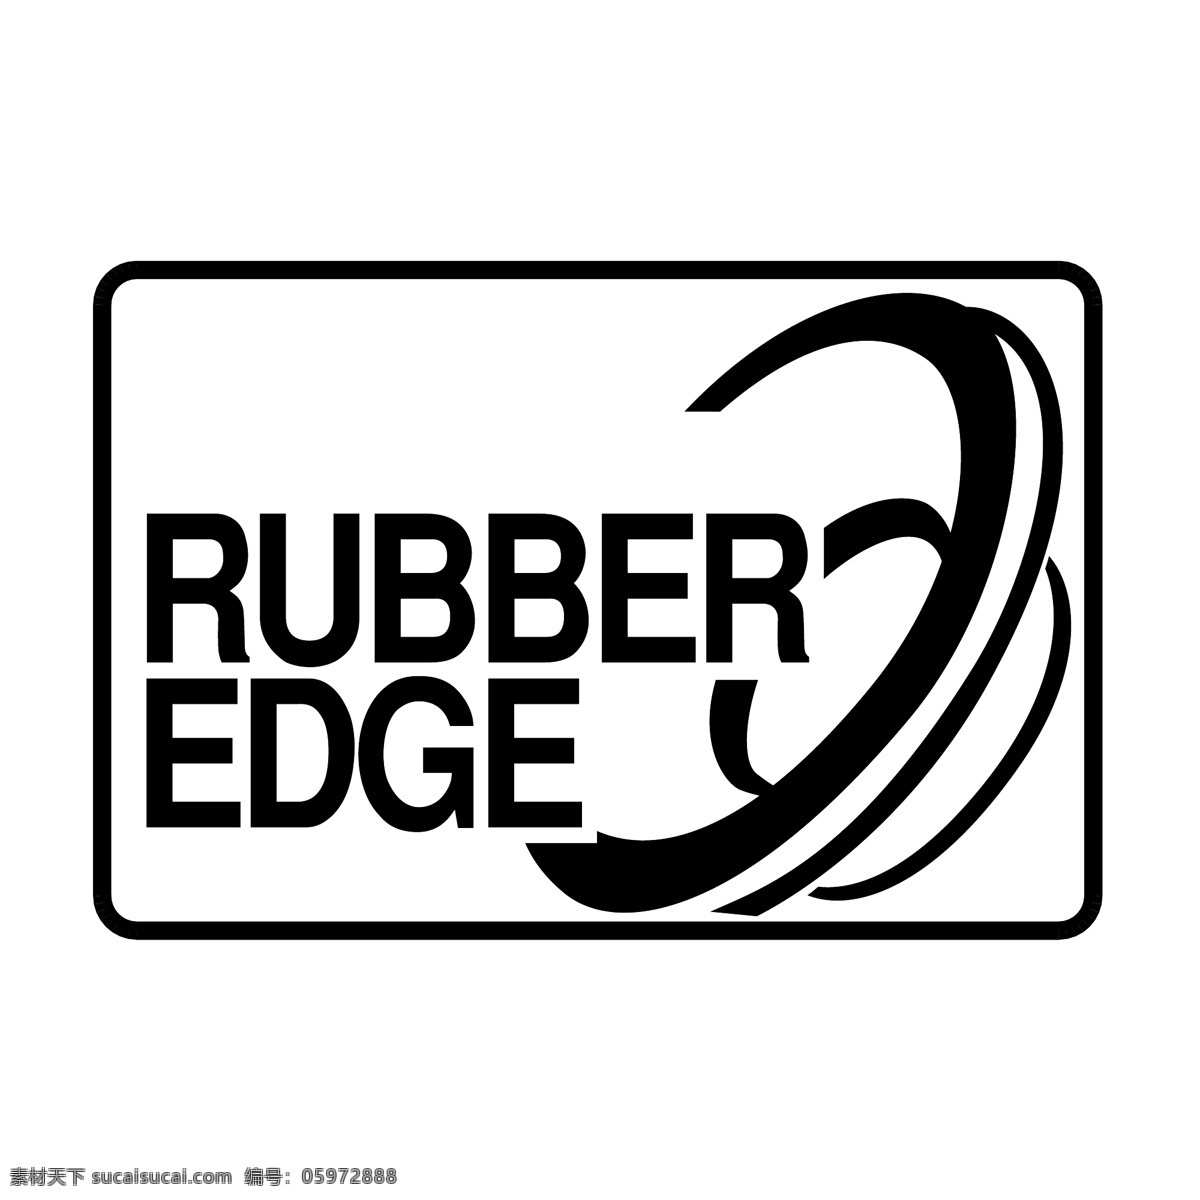 橡胶 免费 边缘 标志 psd源文件 logo设计